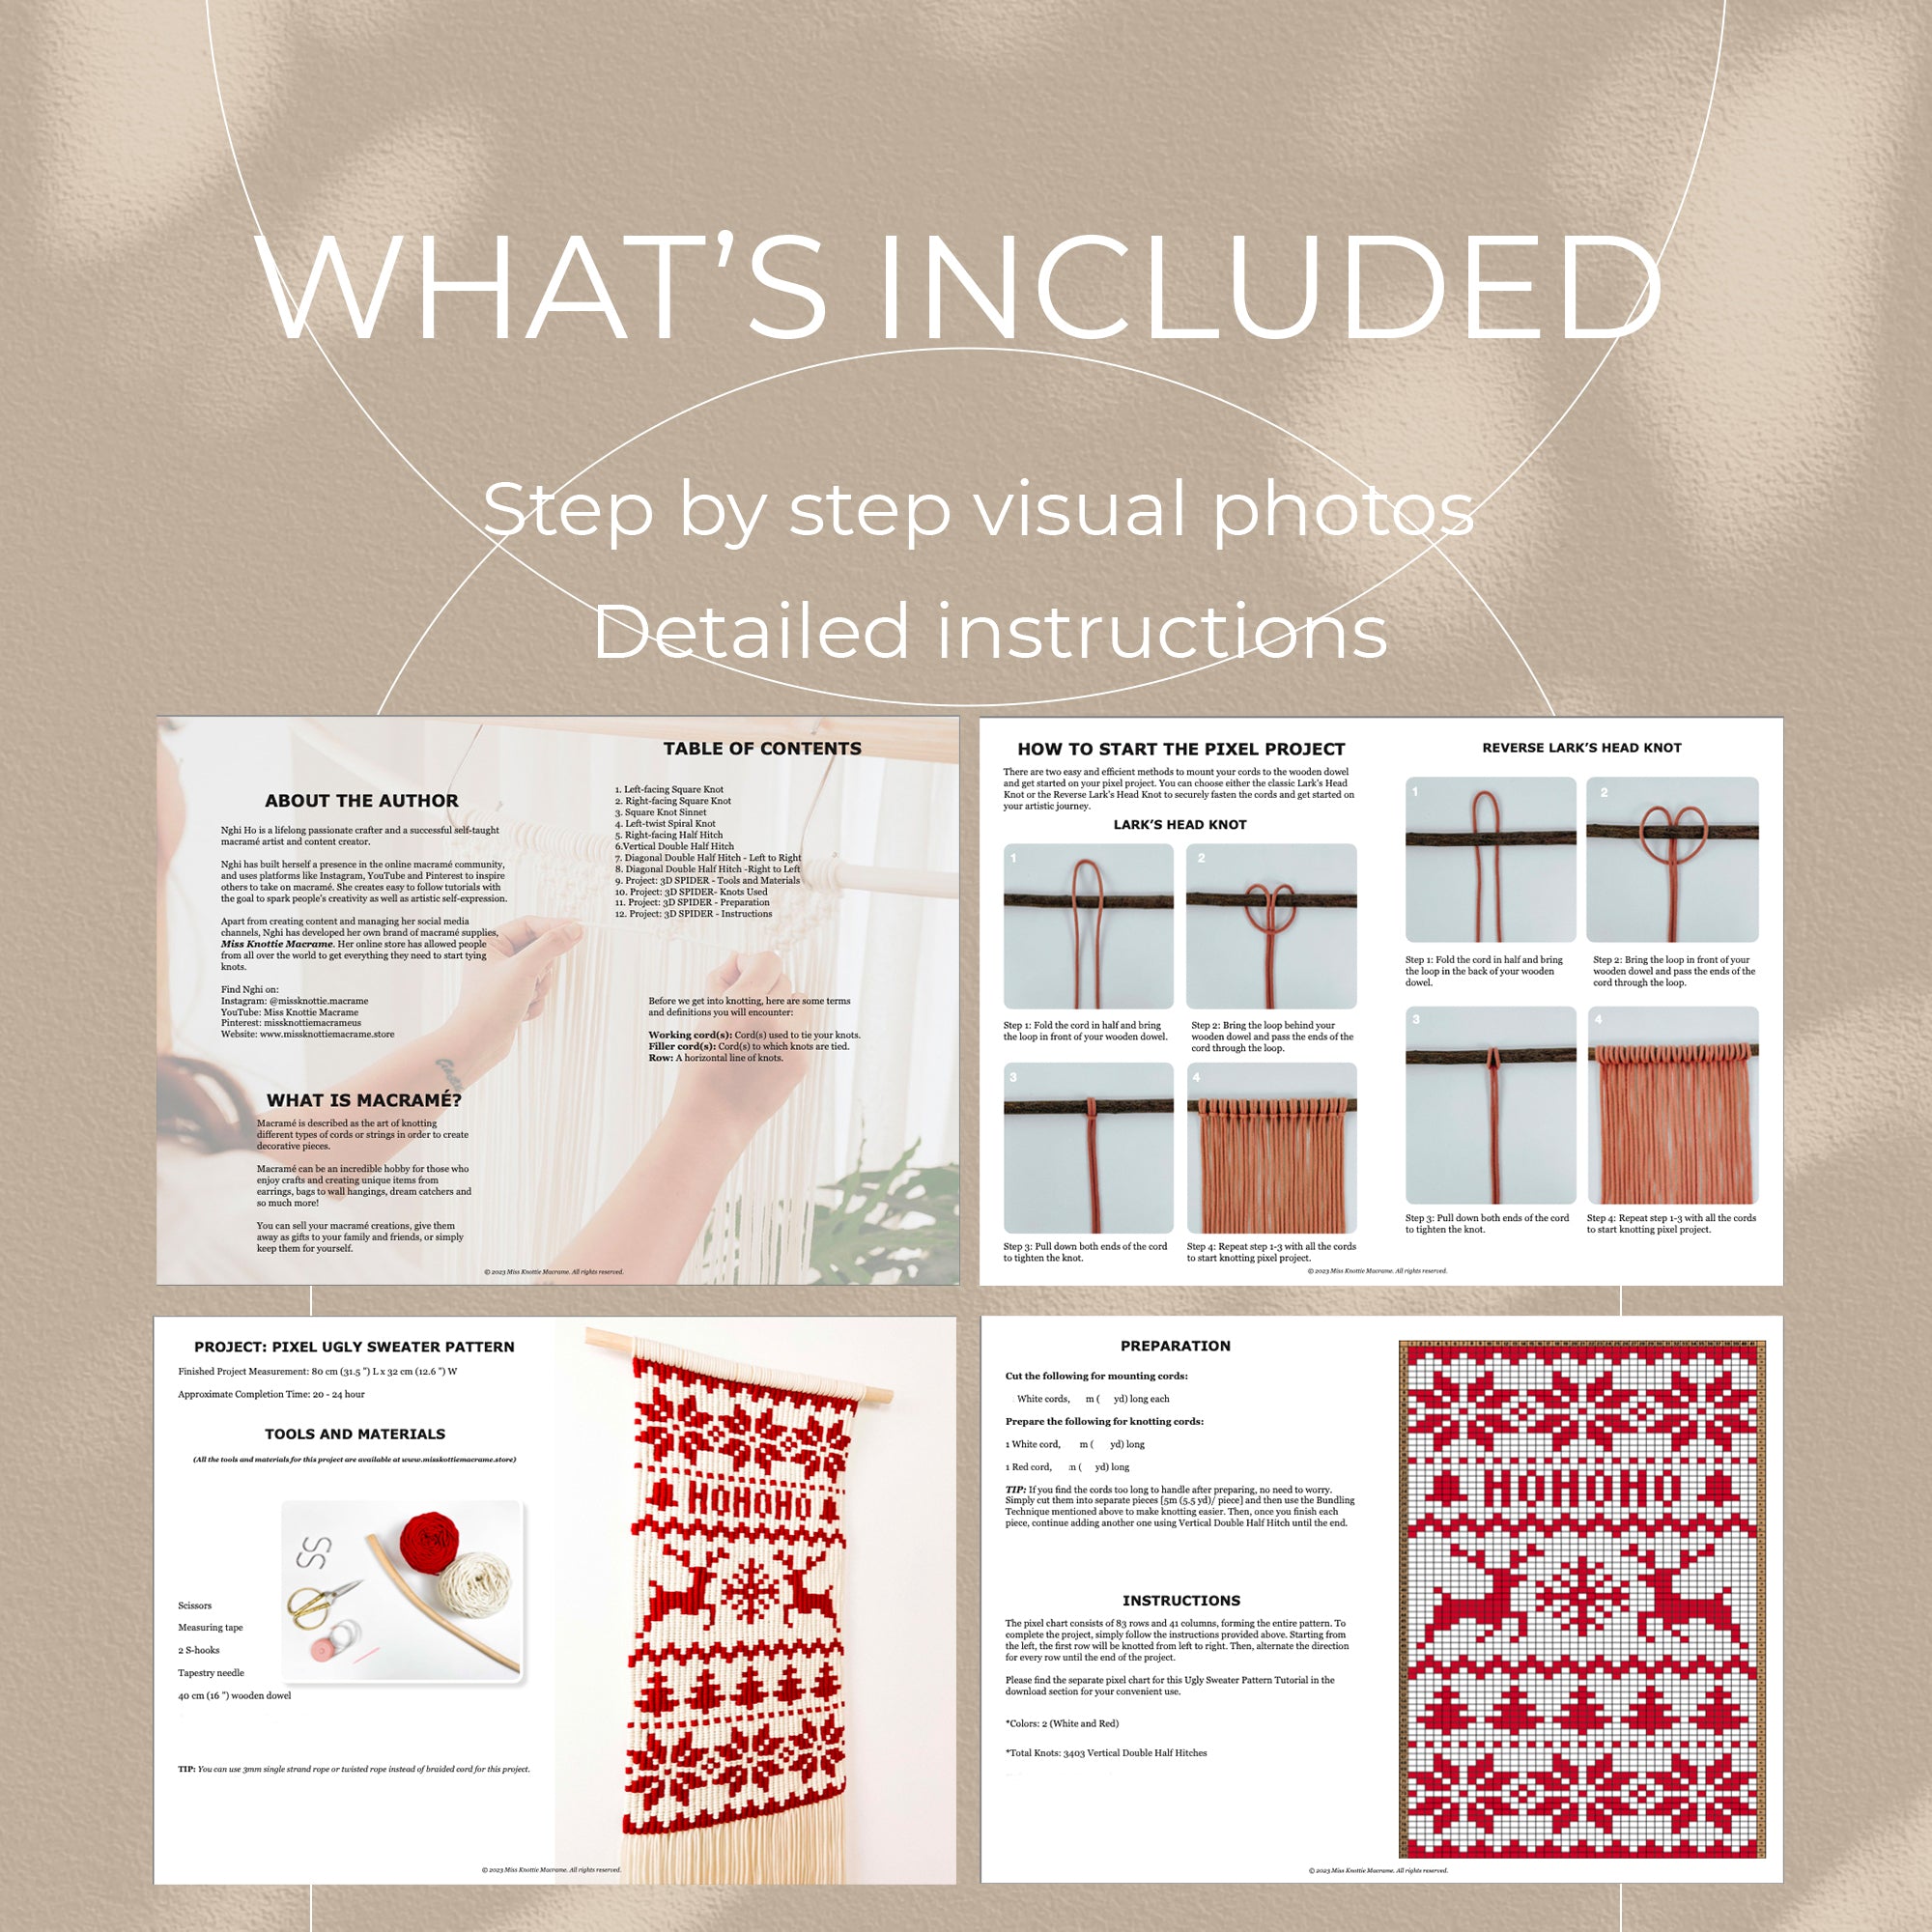 Pattern Pixel maglione brutto di Natale-Guida digitale PDF e Nicolo